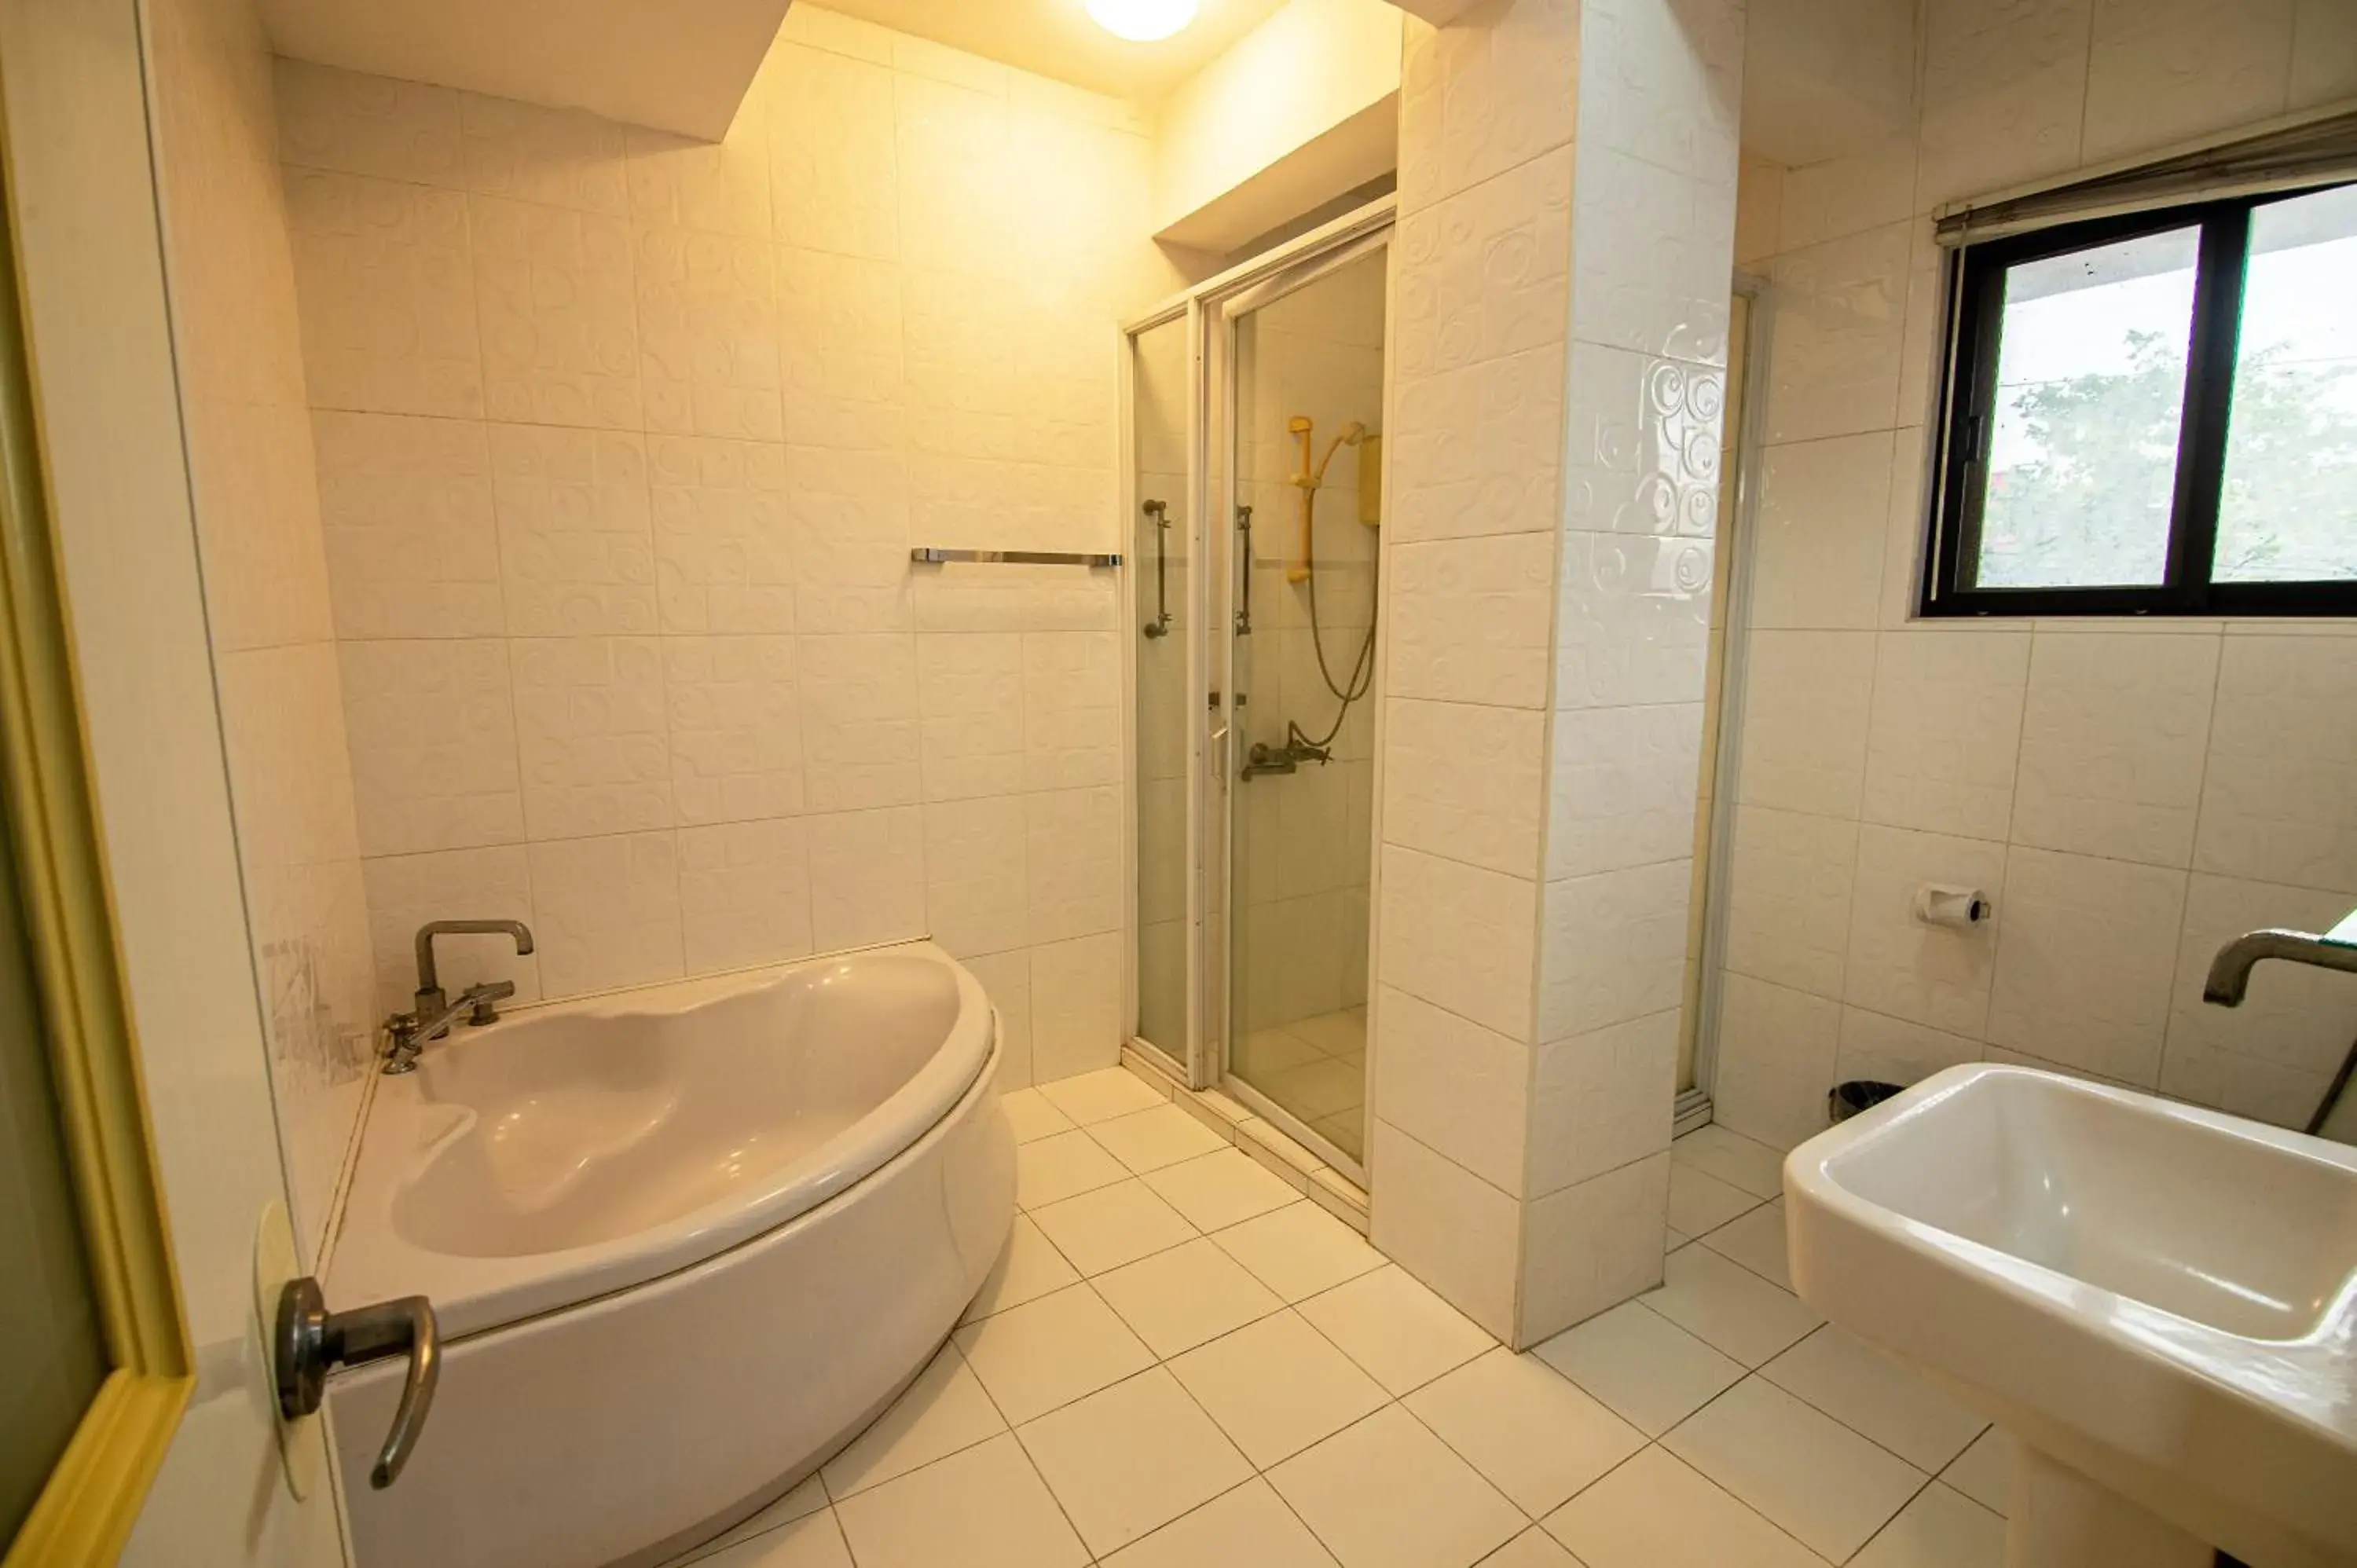 Bathroom in Kiwi Hotel